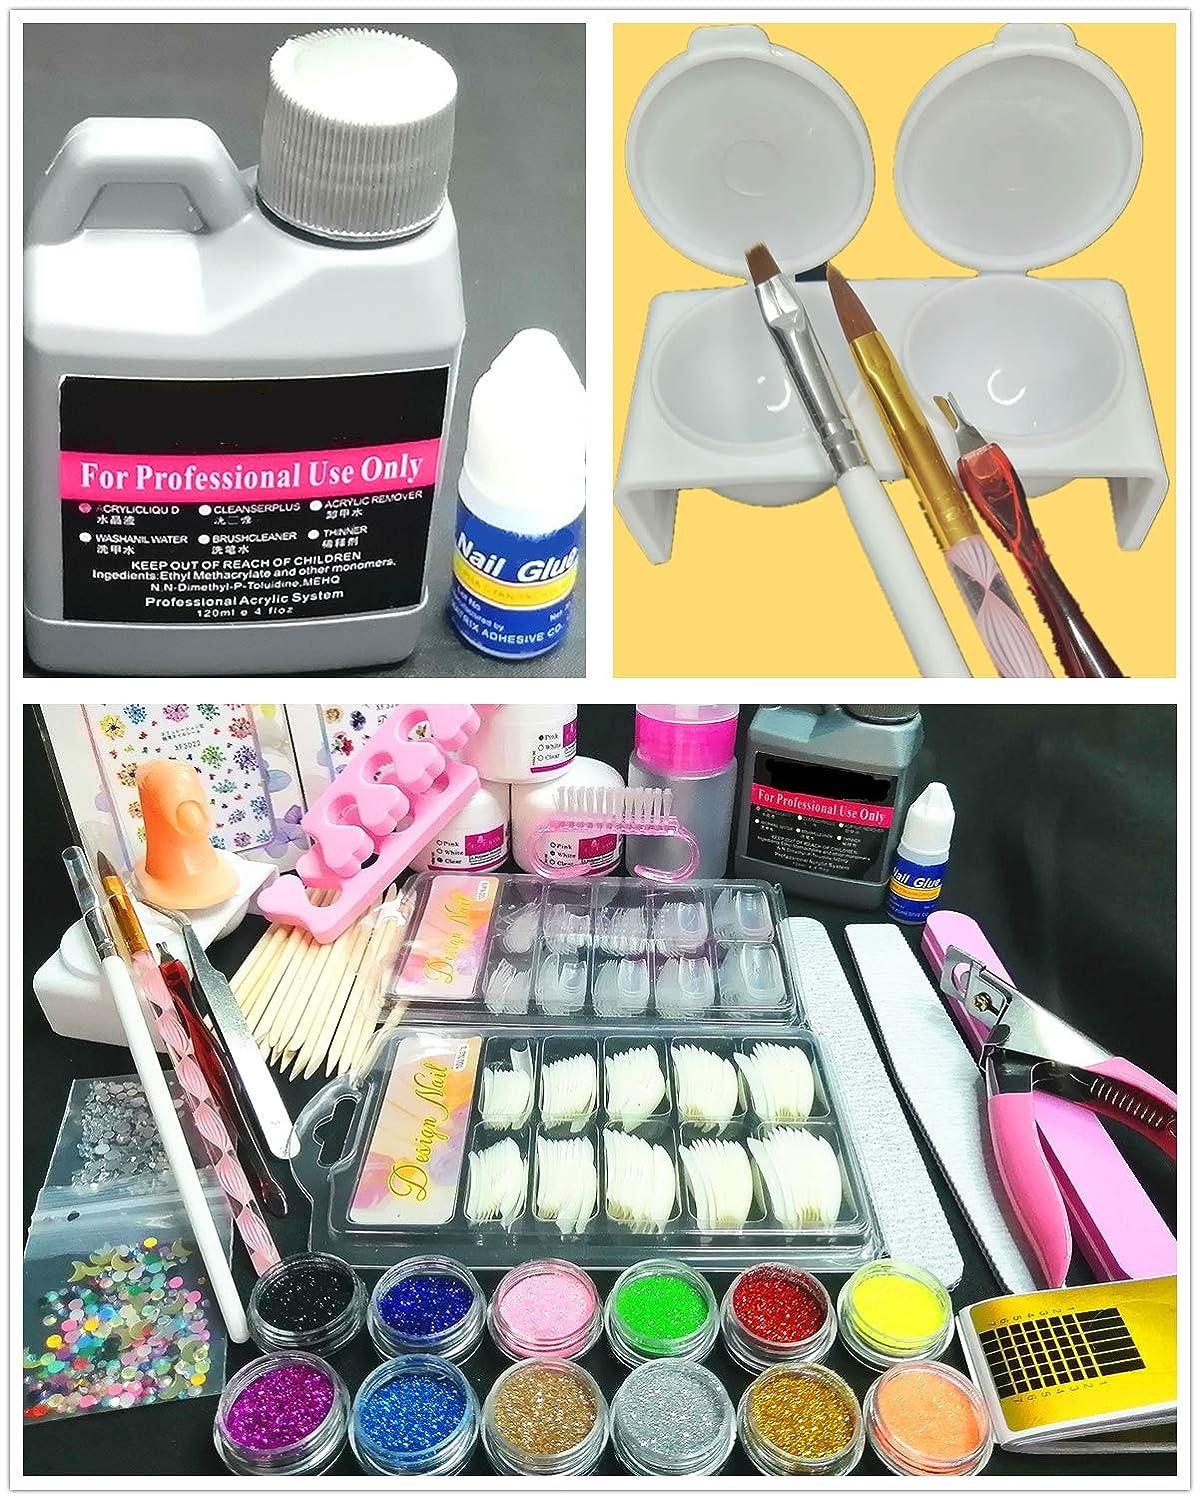 Professional Acrylic Nail Kit - Acrylic Powders, Gel Nail Polish,Base Top  Coat,Nail Uv/Led Lamps, Nail Tips, Decorations & Tools - Perfect For Diy  Nail Art Beginners Gift For Women | SHEIN